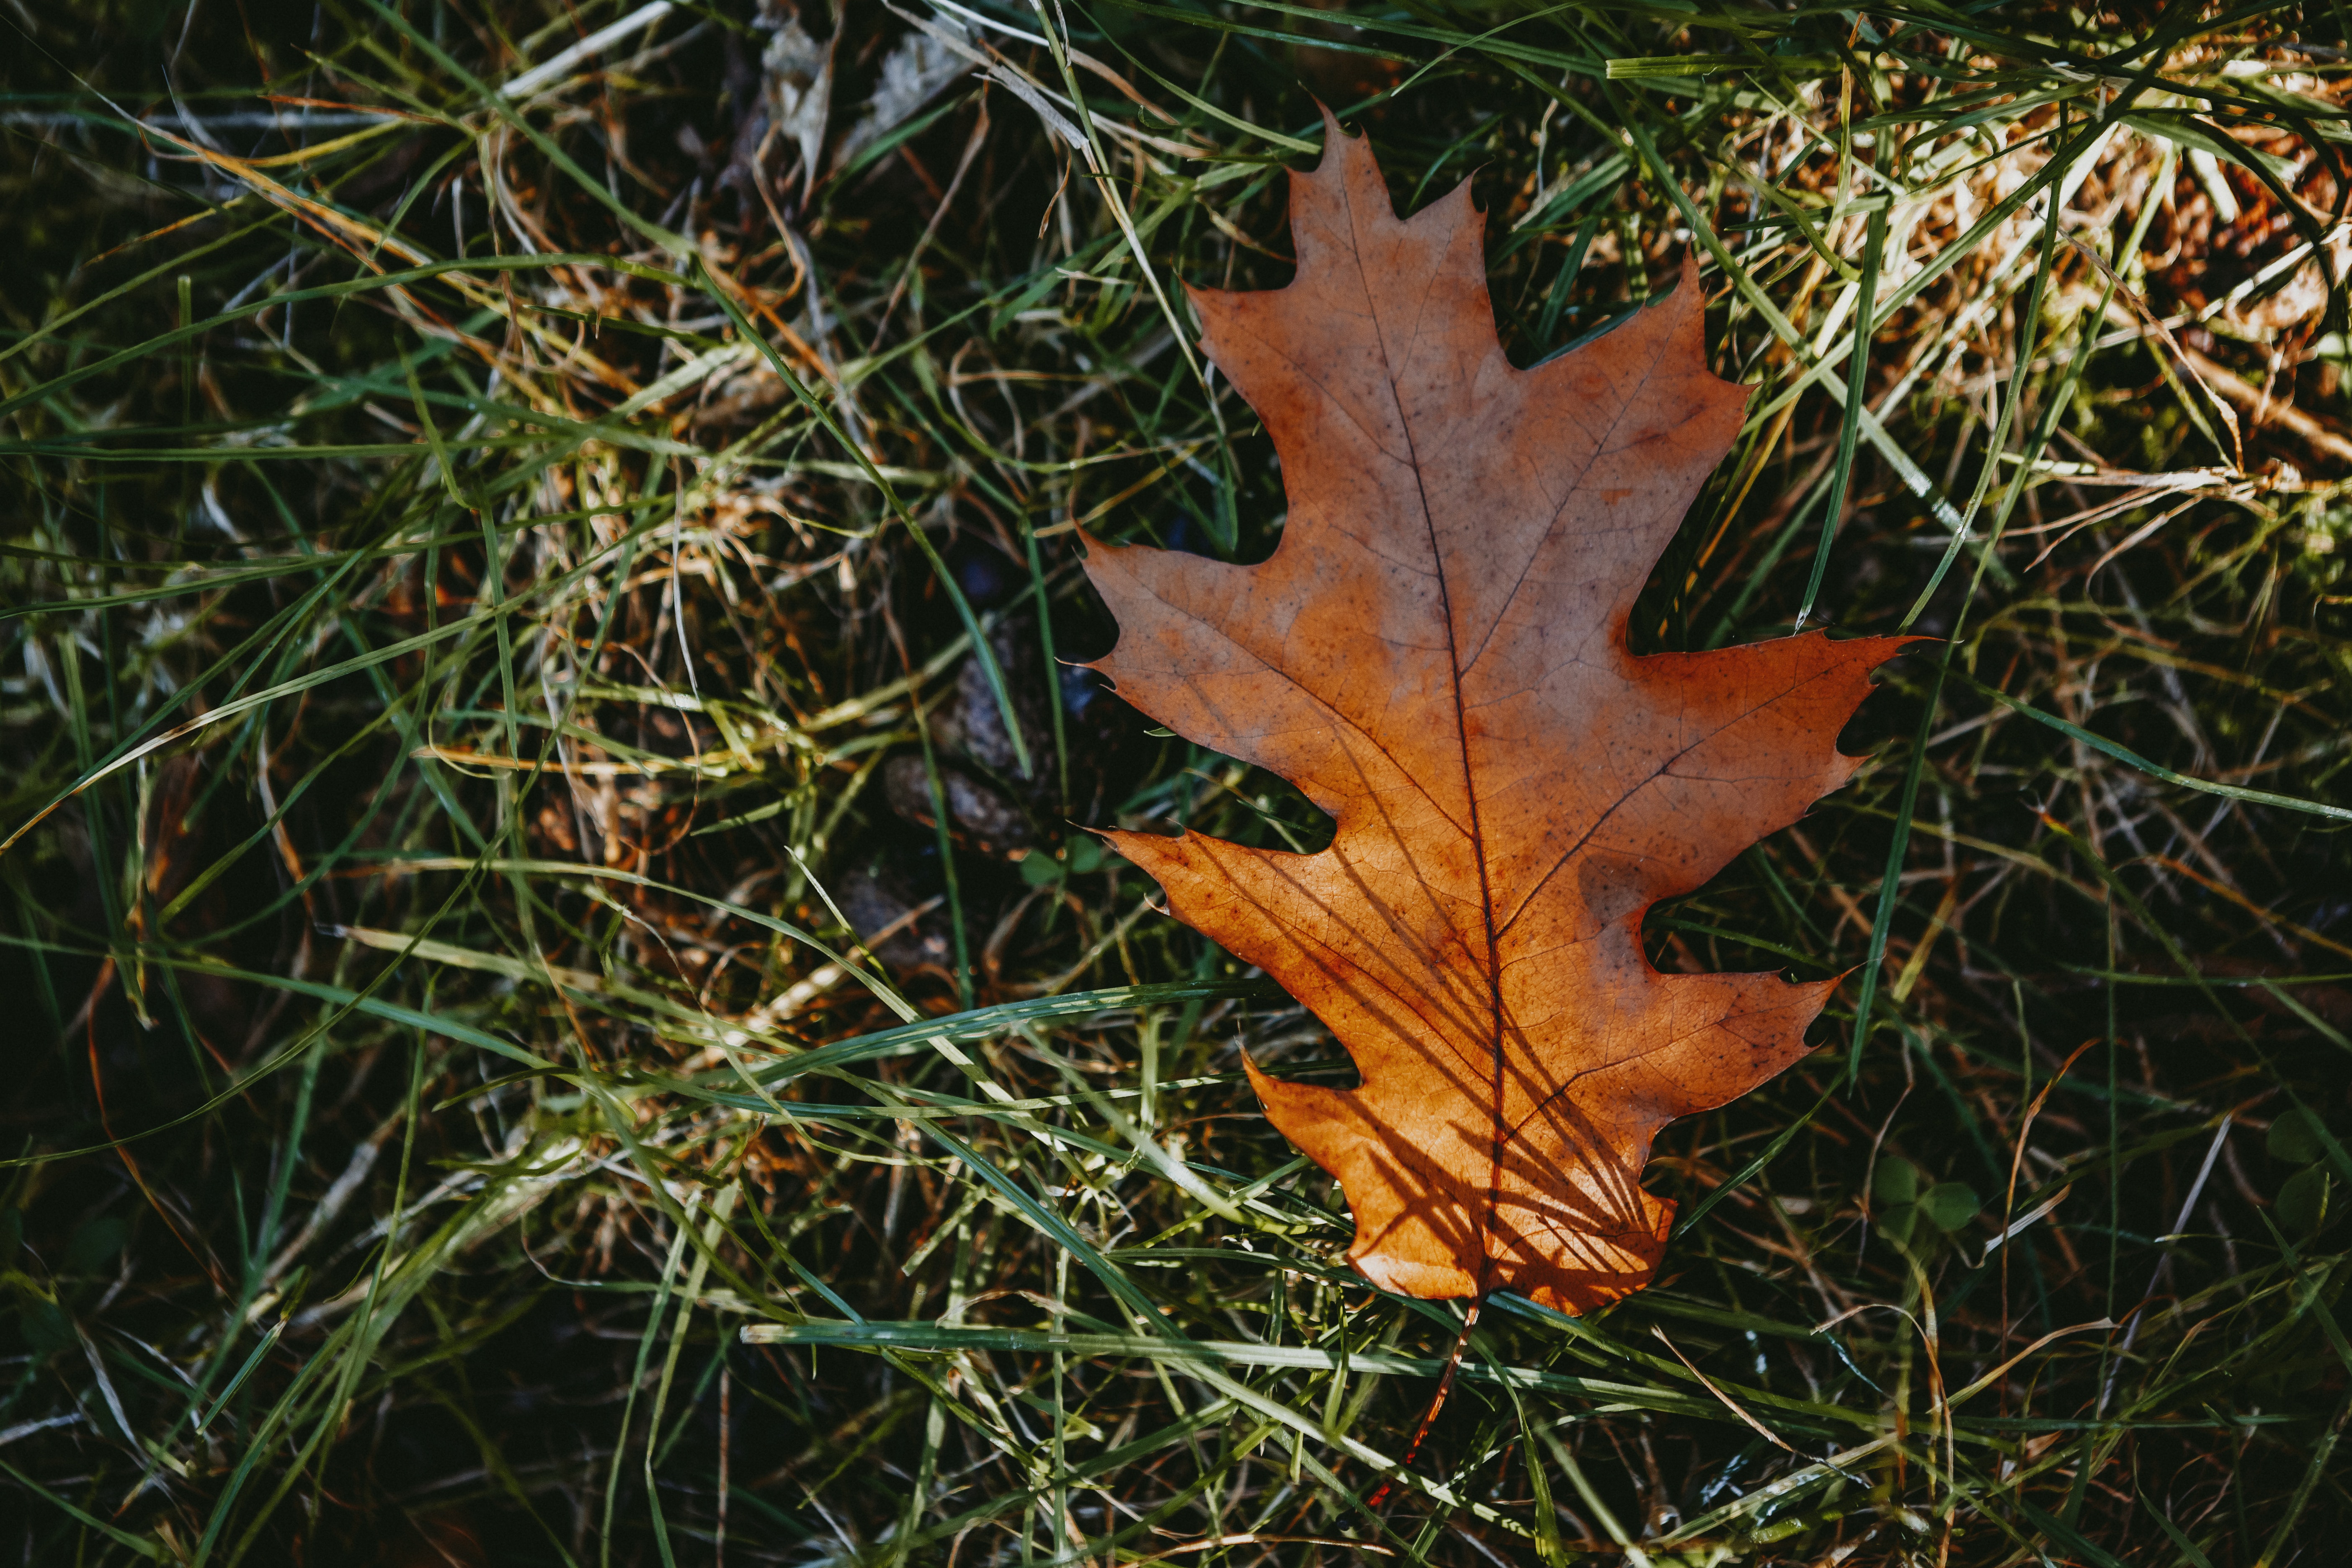 A brown leaf lies atop green grass